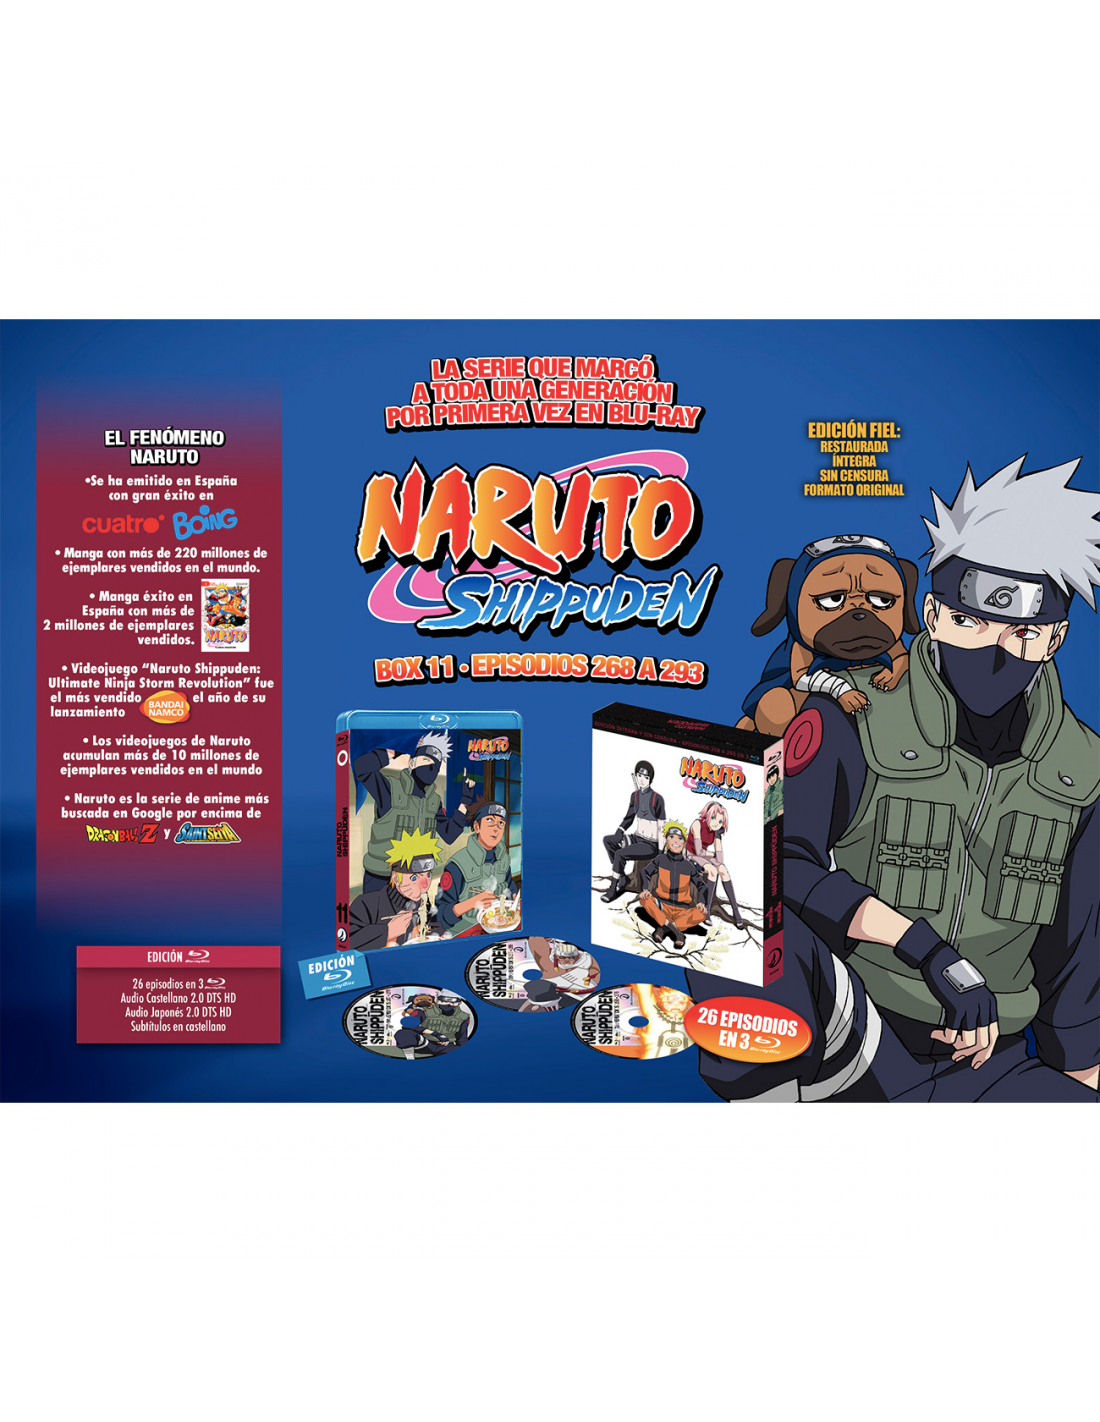 NARUTO SHIPPUDEN BOX 11 Formato Blu-Ray